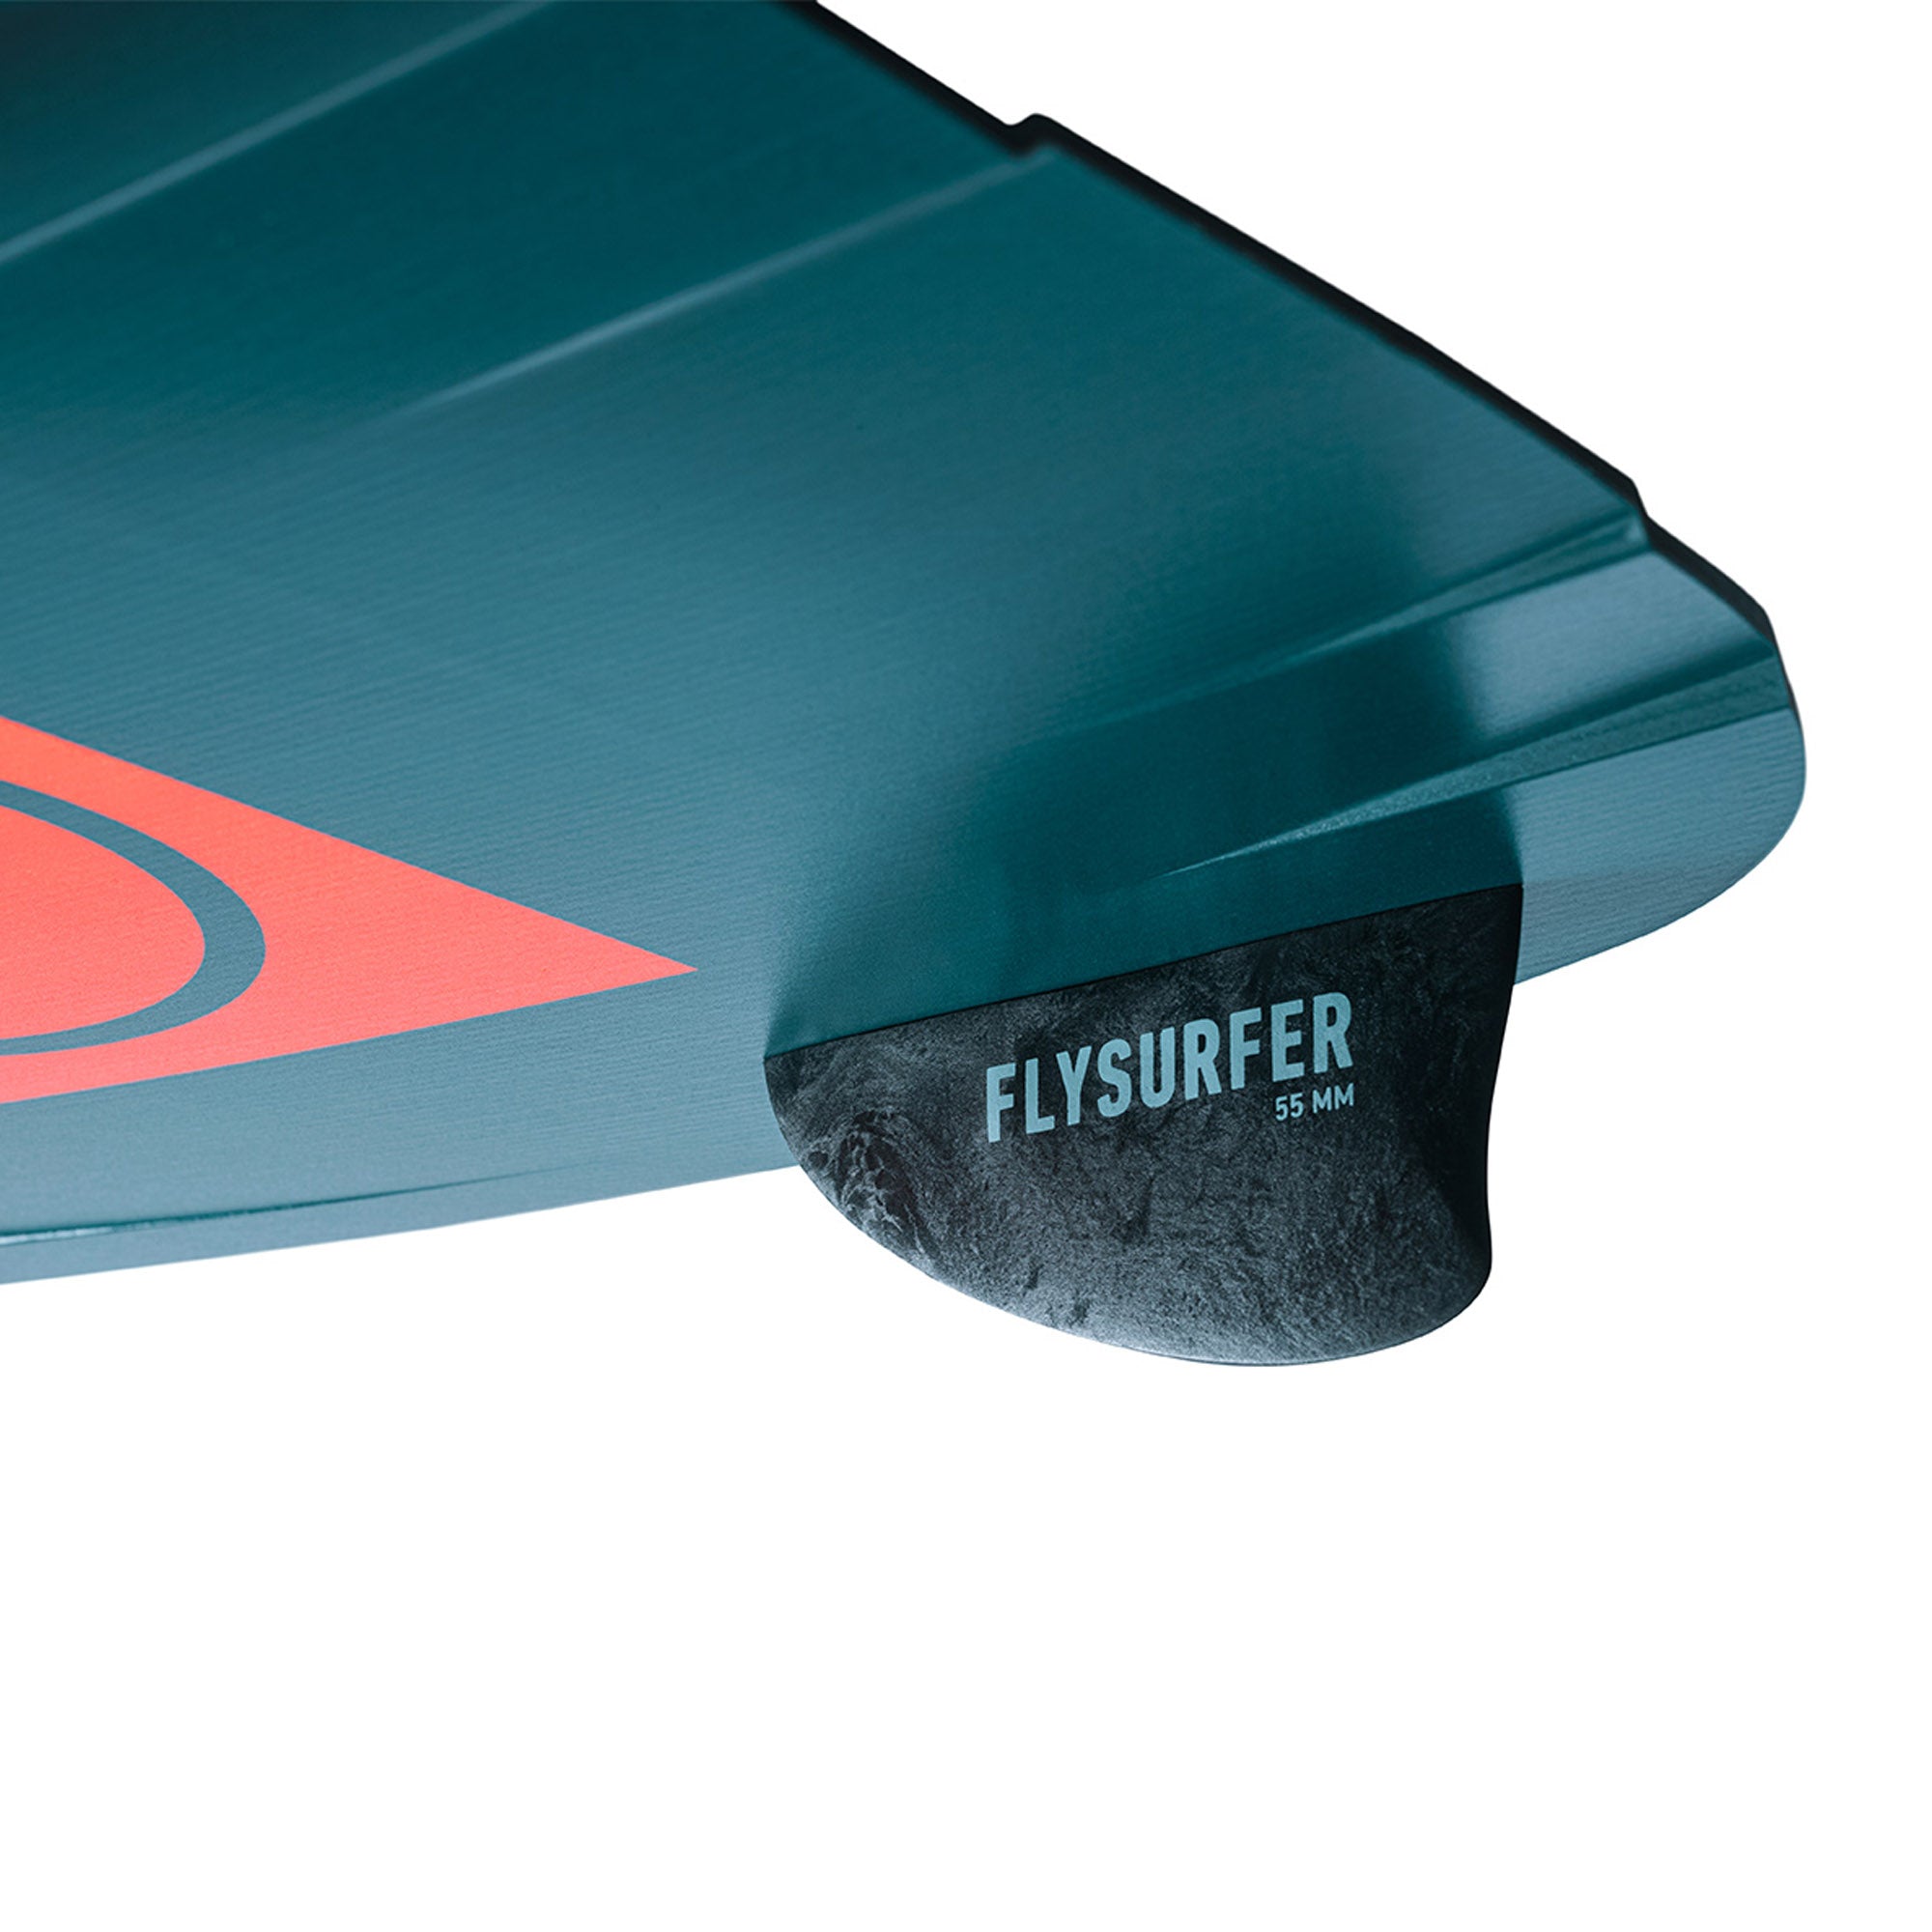 Flysurfer Radical 7 Kiteboard